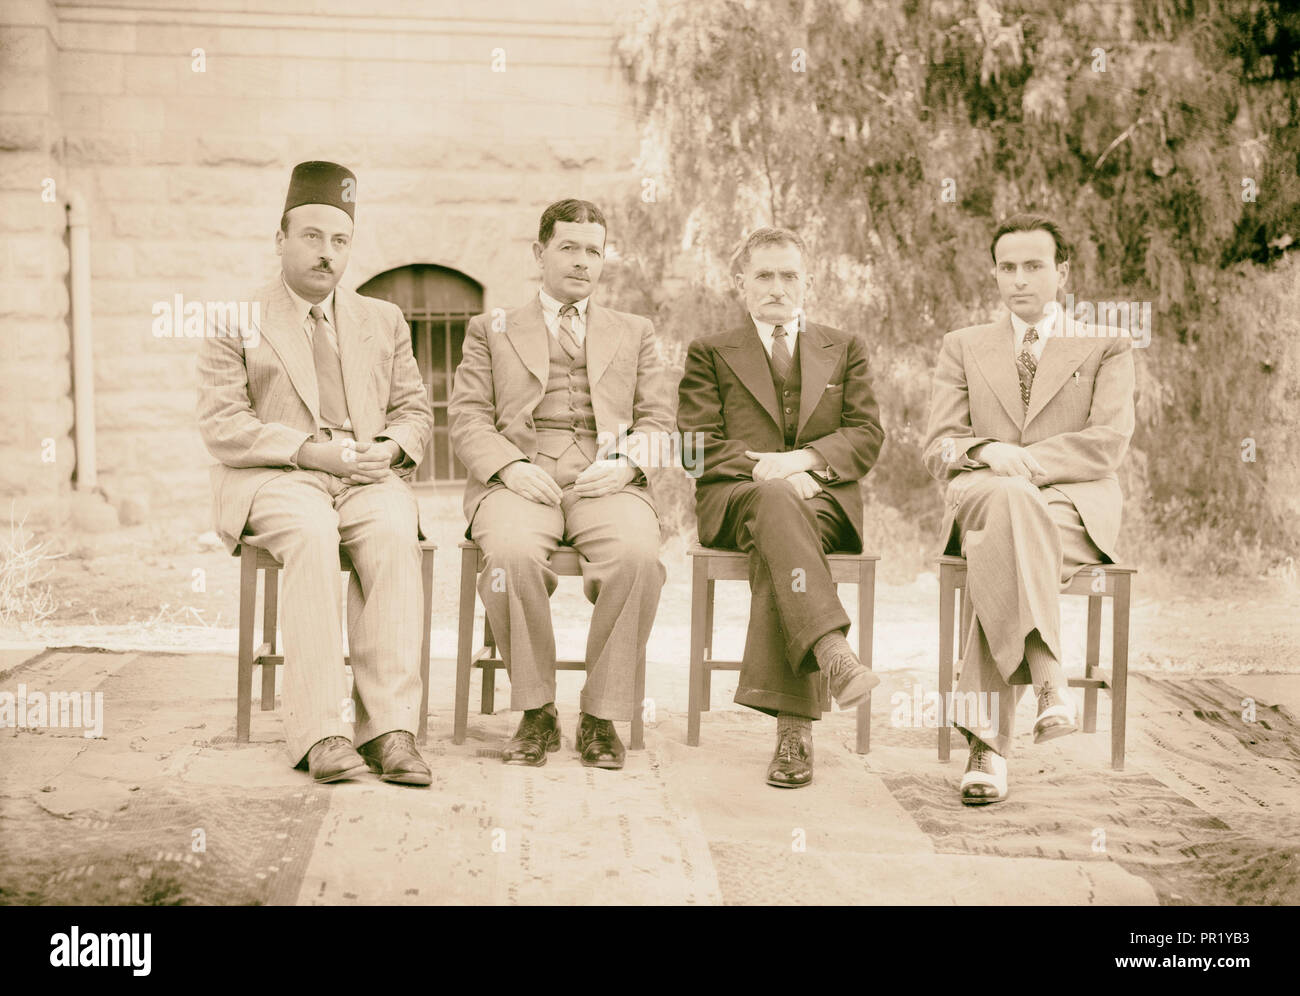 Arabische Mitarbeiter an P.B.S. [D. h., Palästina Broadcasting Service] Kleine Gruppe von 4 Personen. Foto zeigt (von rechts nach links) Yusuf Stockfoto